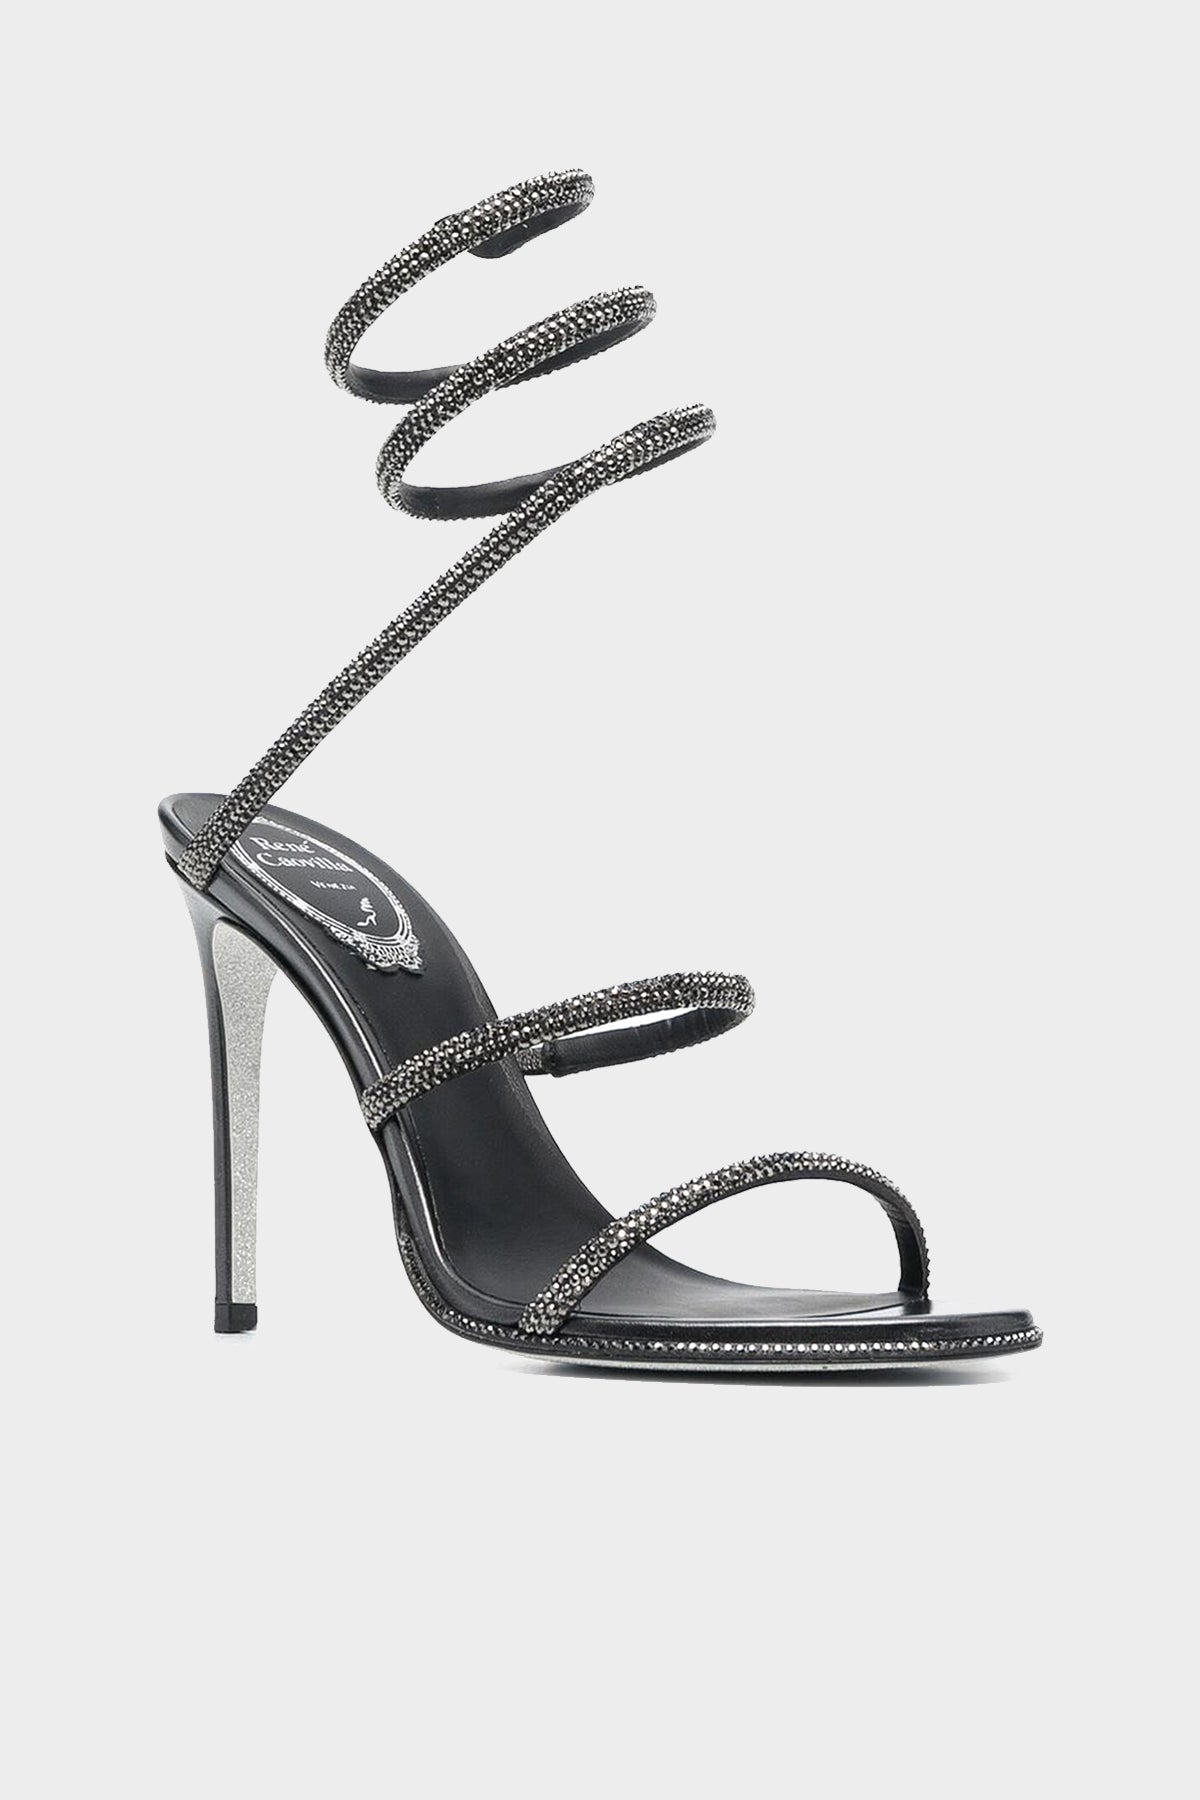 Cleo Crystal-Embellished Strap Sandal 105 in Grey Jet - shop-olivia.com